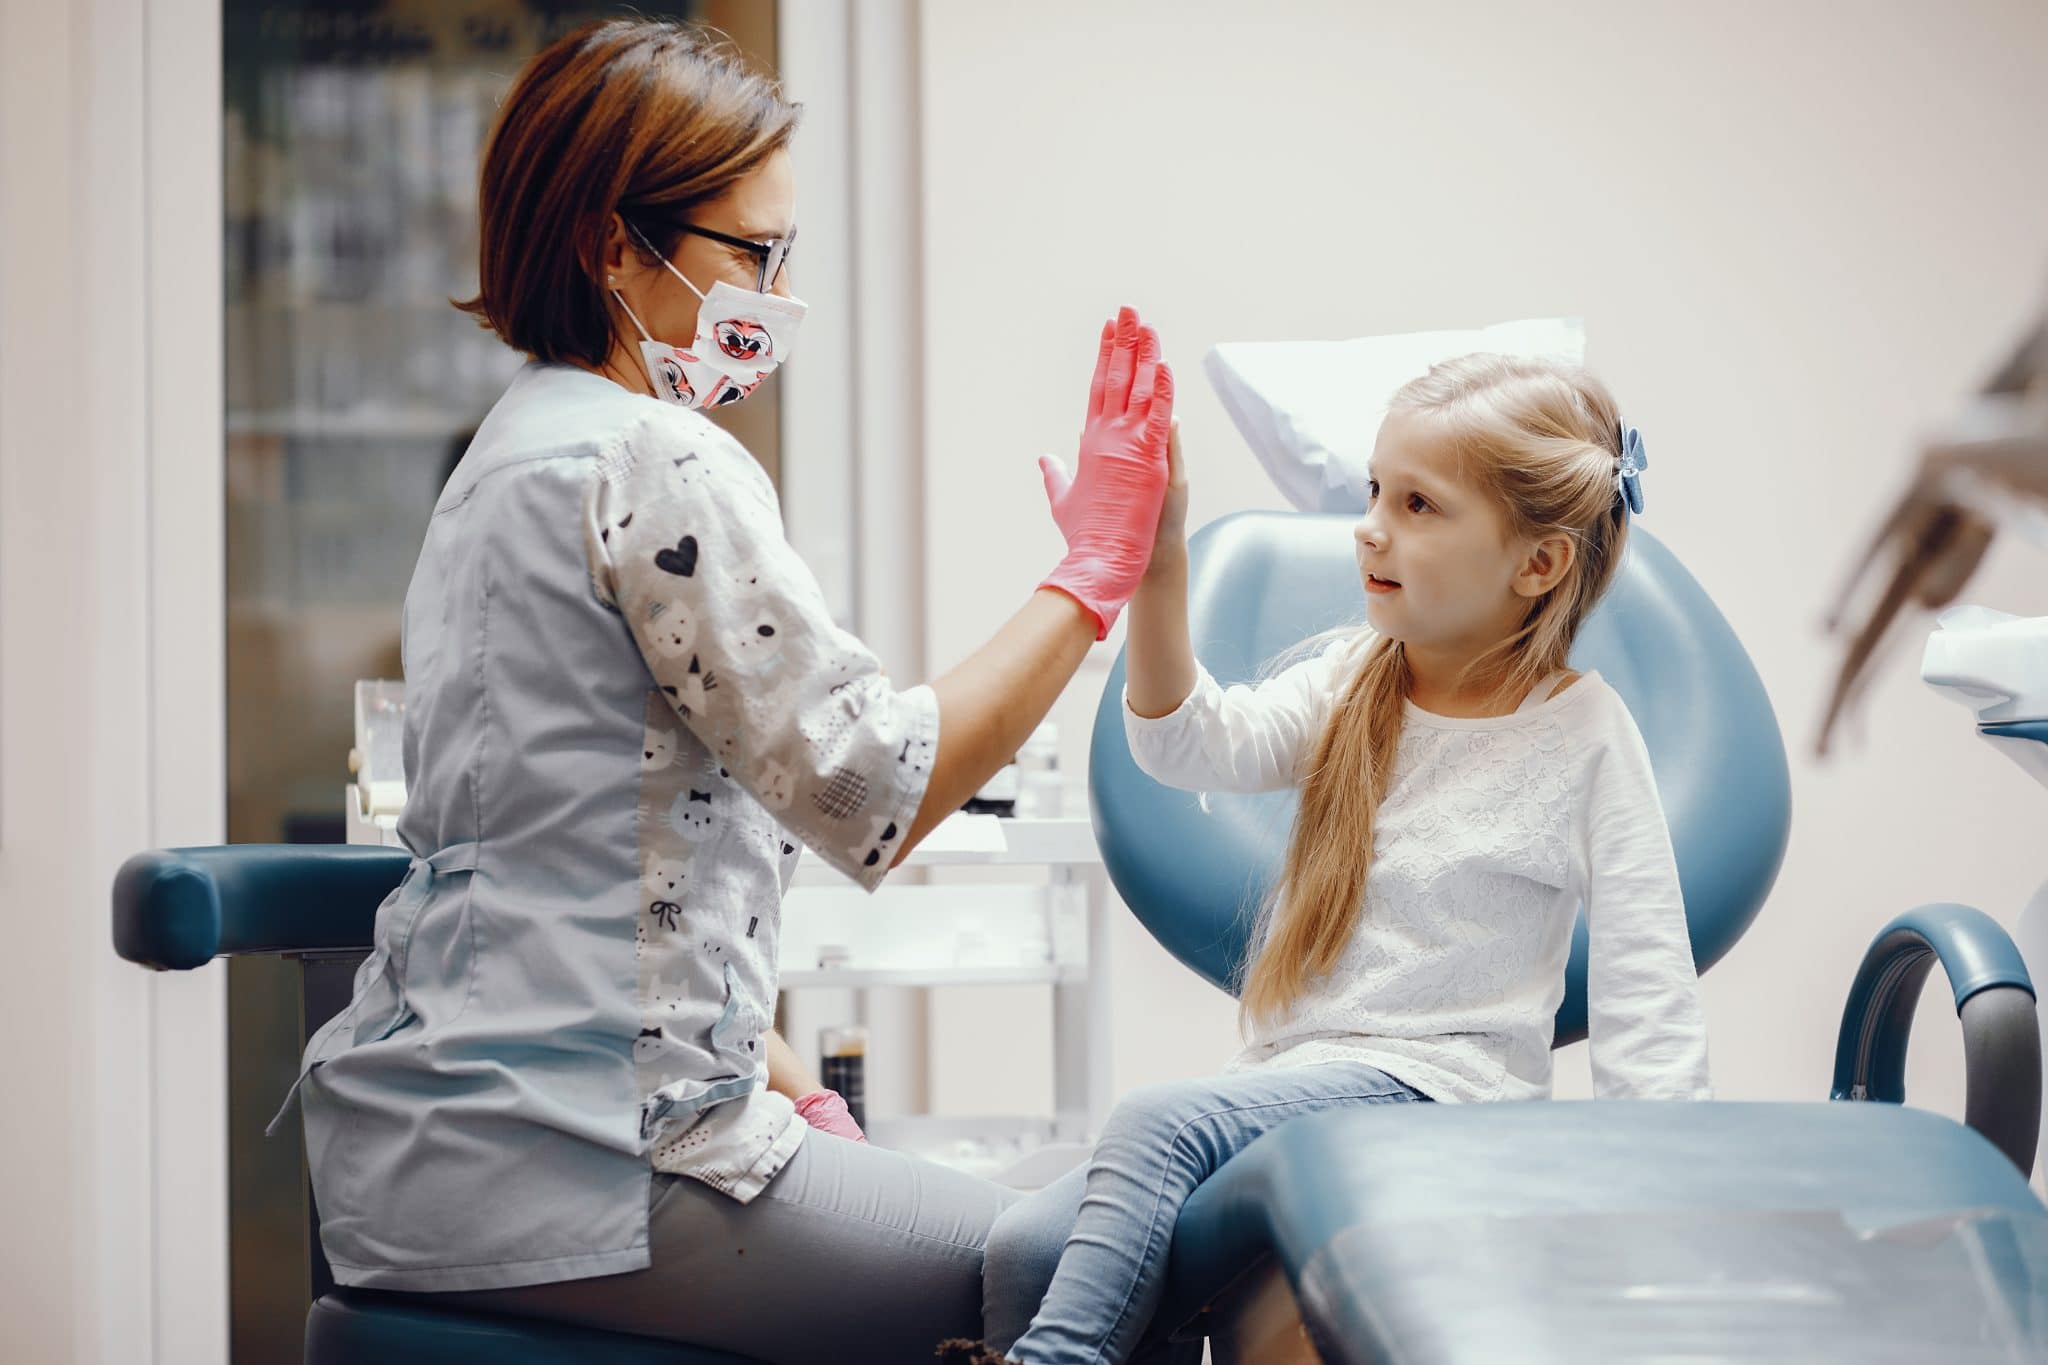 Paura del dentista nei bambini: cosa può fare un genitore?